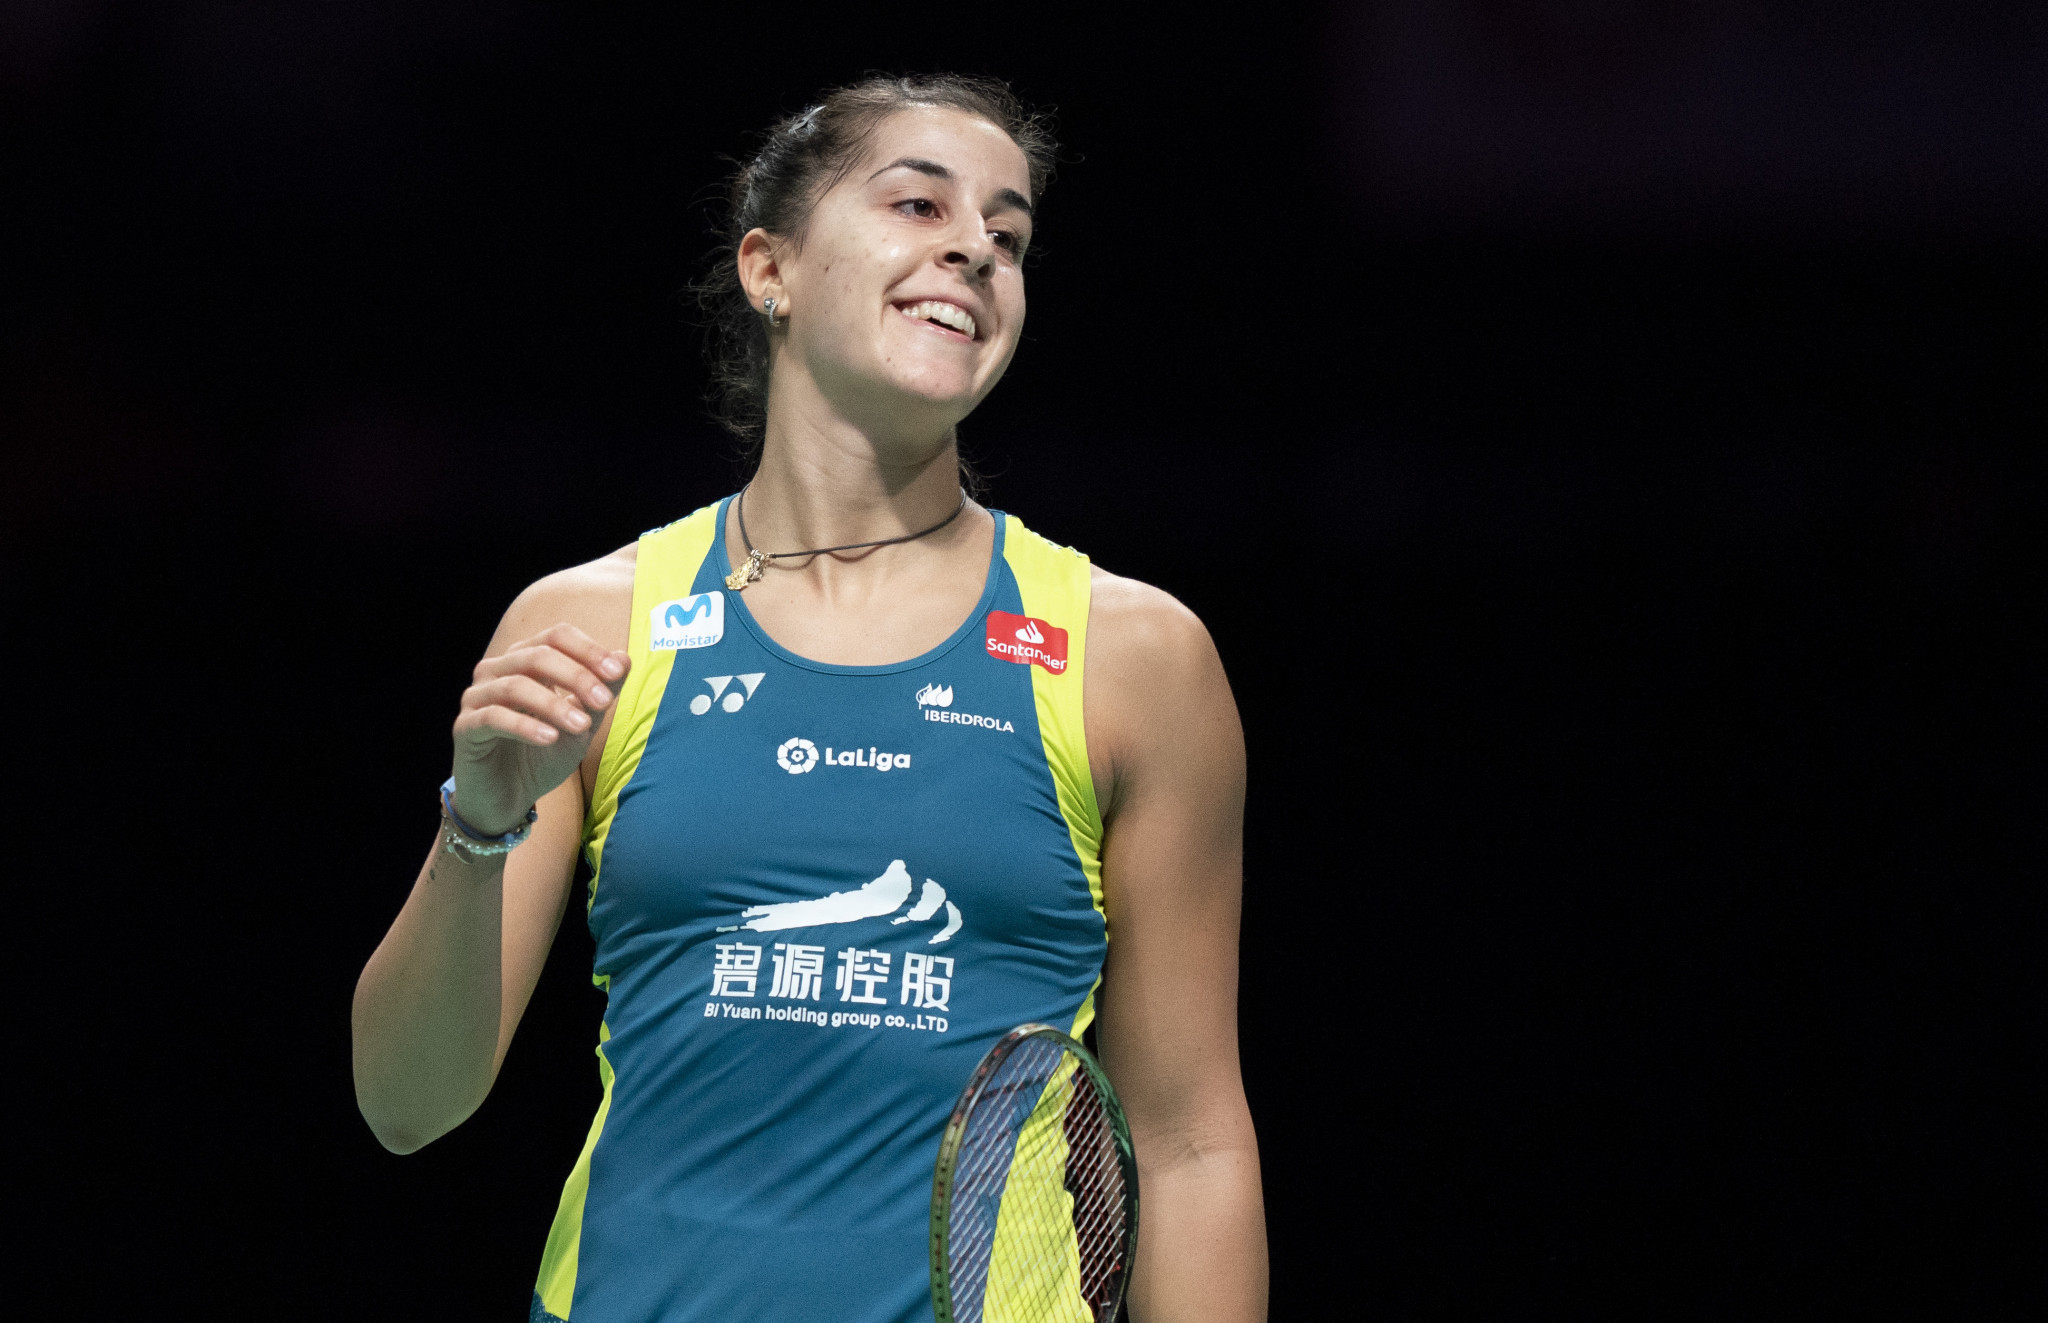 Marín wins sixth successive European title in comeback event